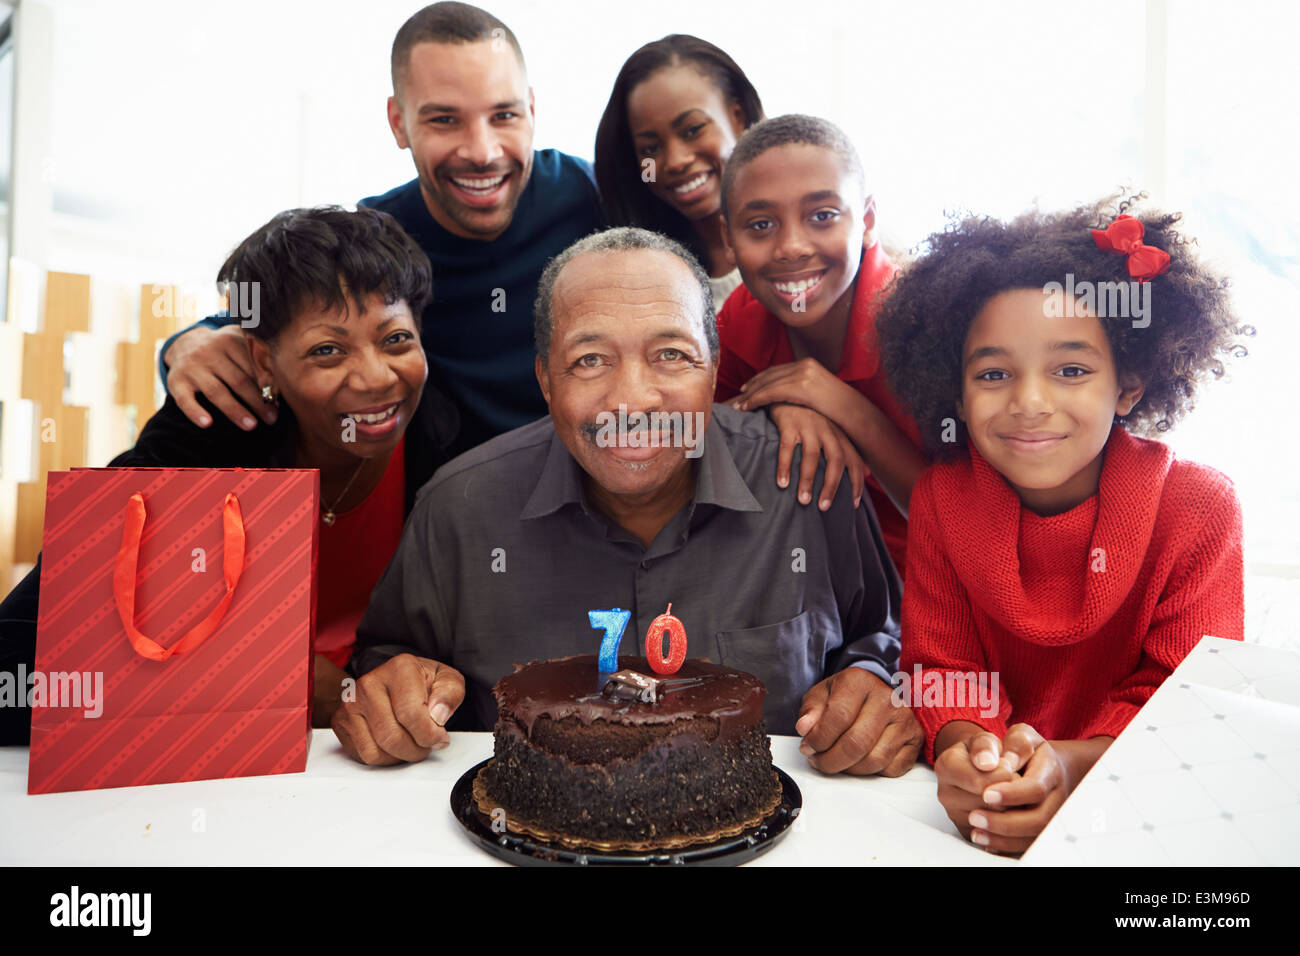 La célébration de la famille 70e anniversaire ensemble Banque D'Images